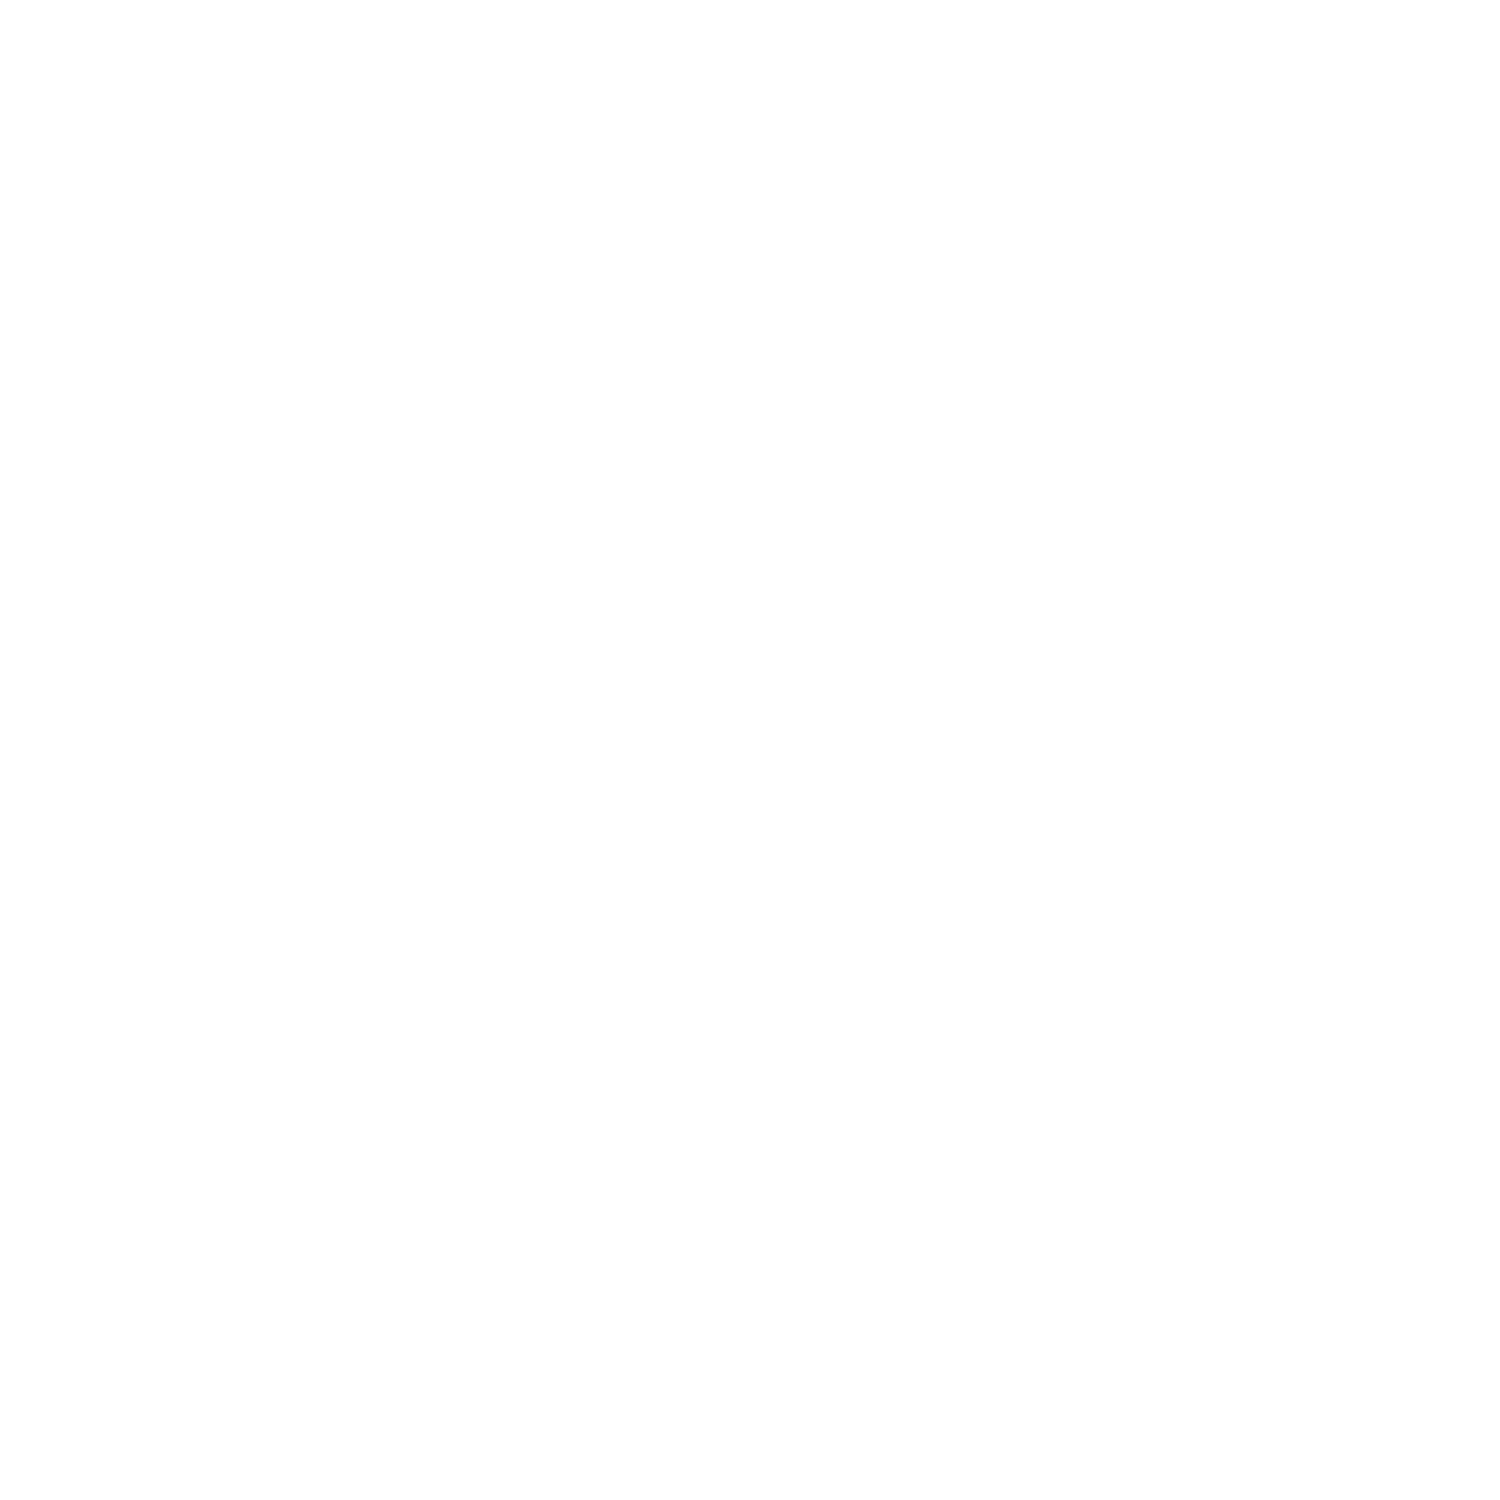 CarlosAlegria